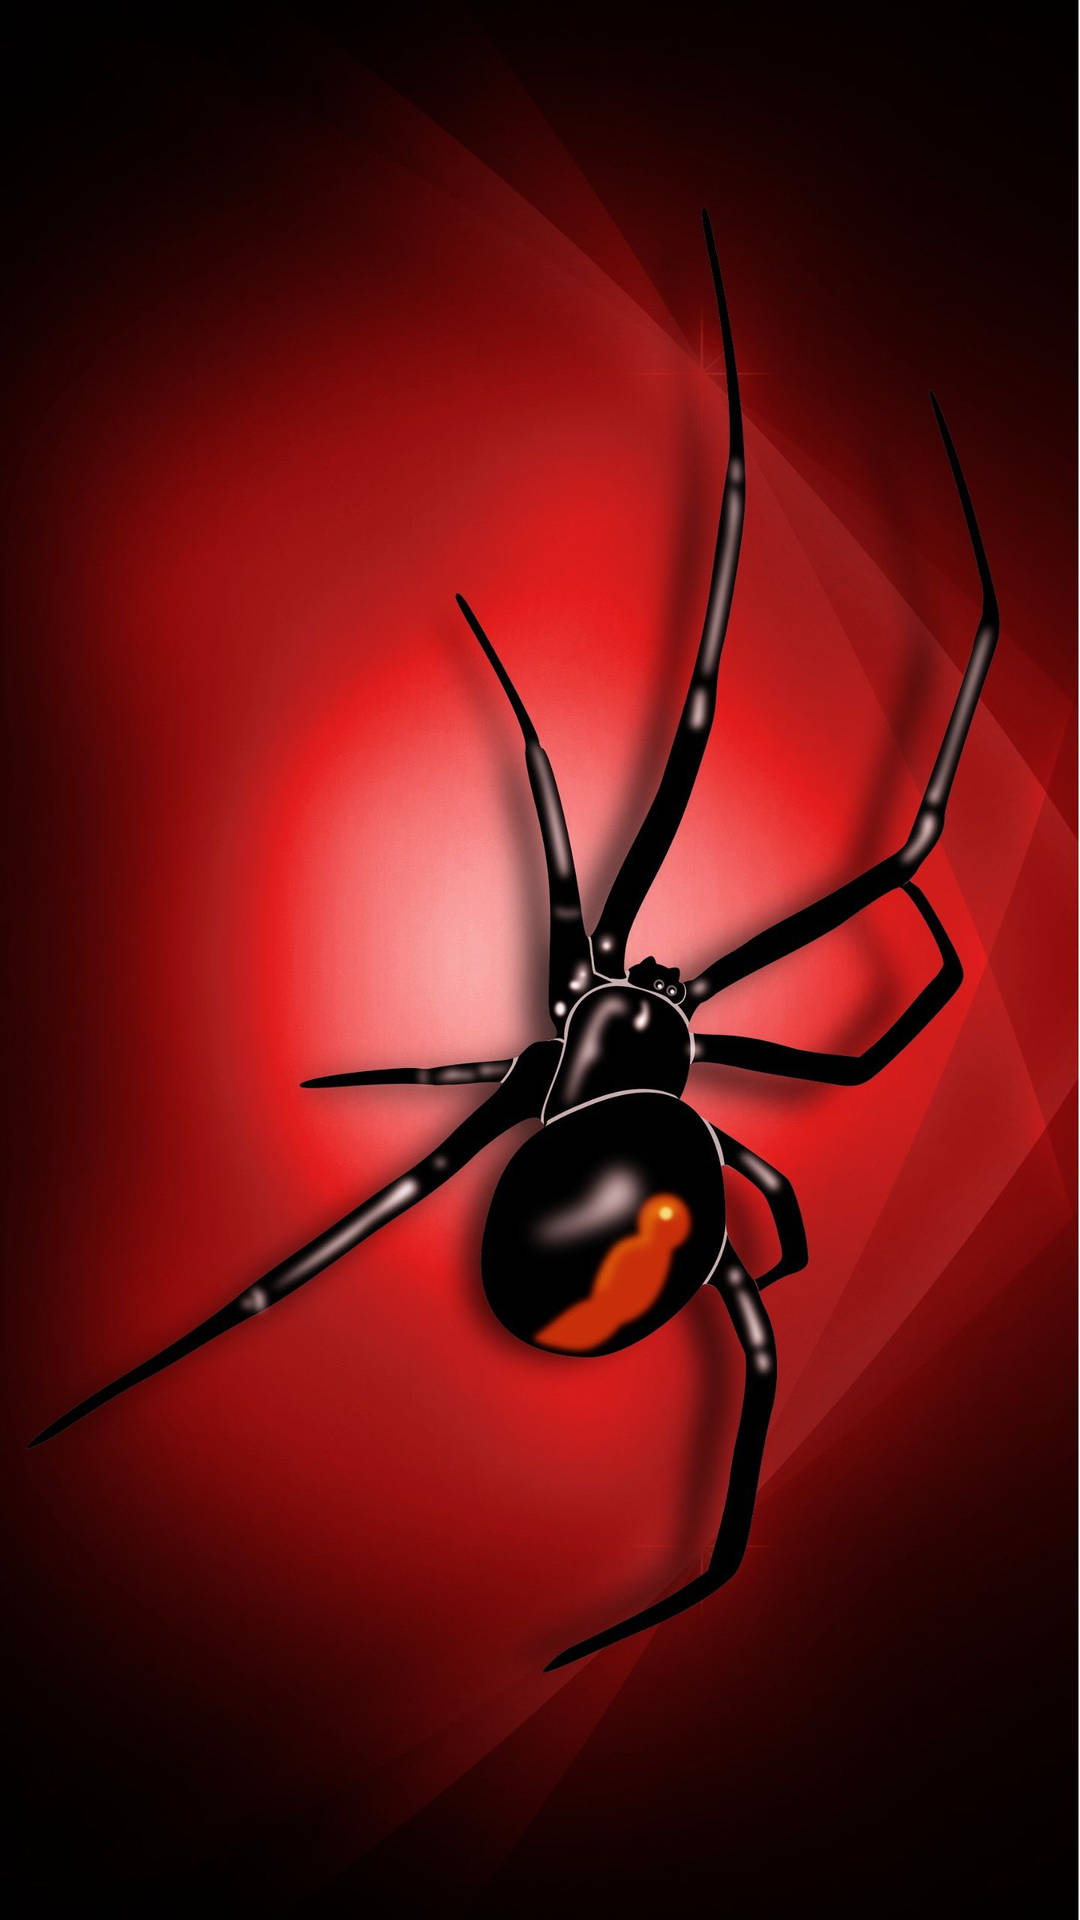 Spider Black Widow Digital Art Background